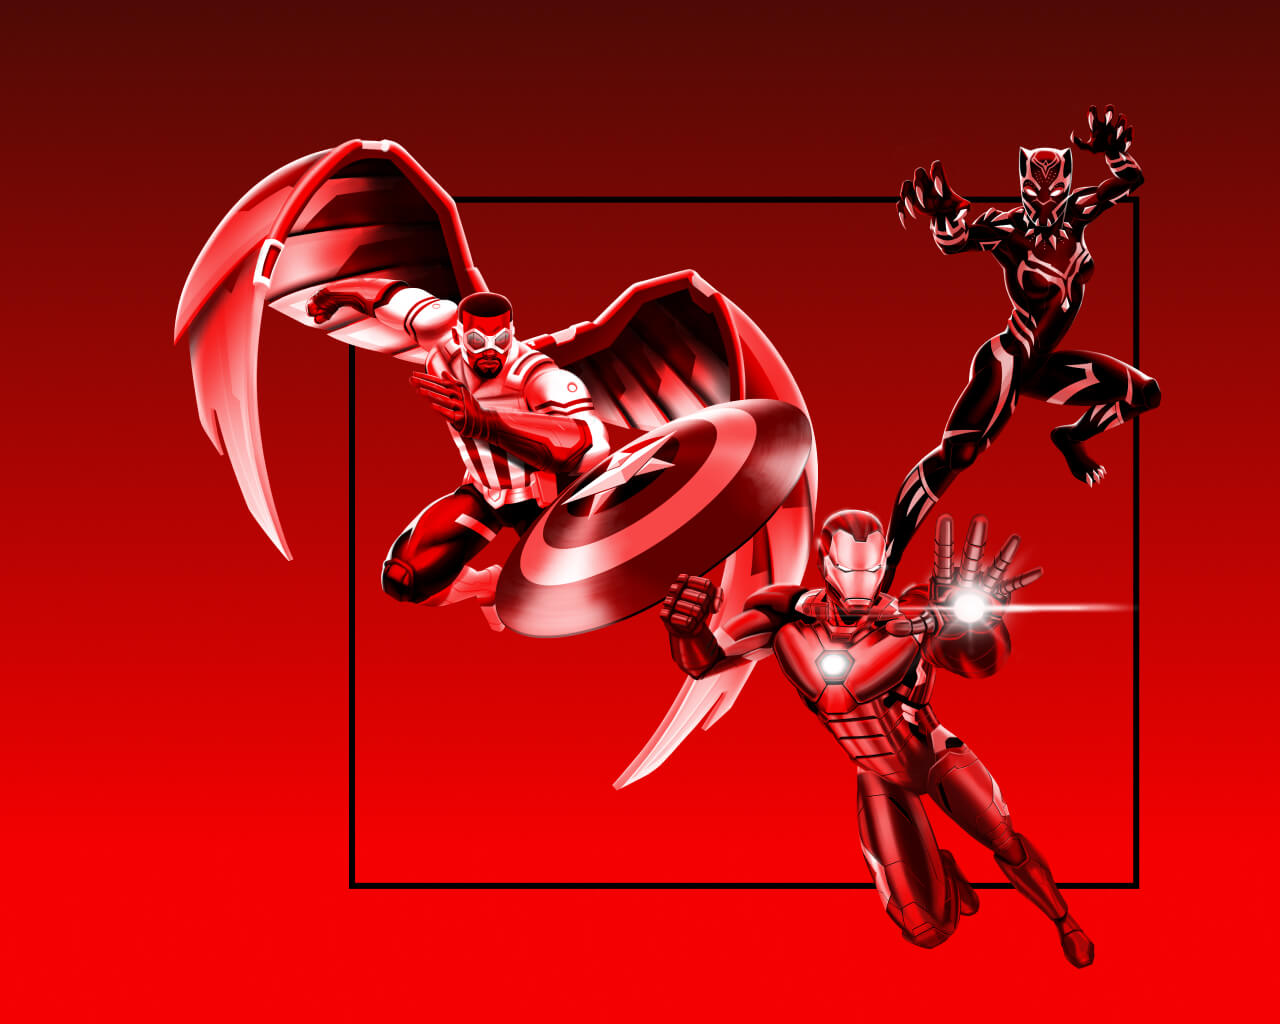 Capitán América lanzando su escudo al lado de Iron Man, a punto de lanzar un poder con su mano, y detrás de él, Black Panther mostrando sus garras sobre un fondo rojo.